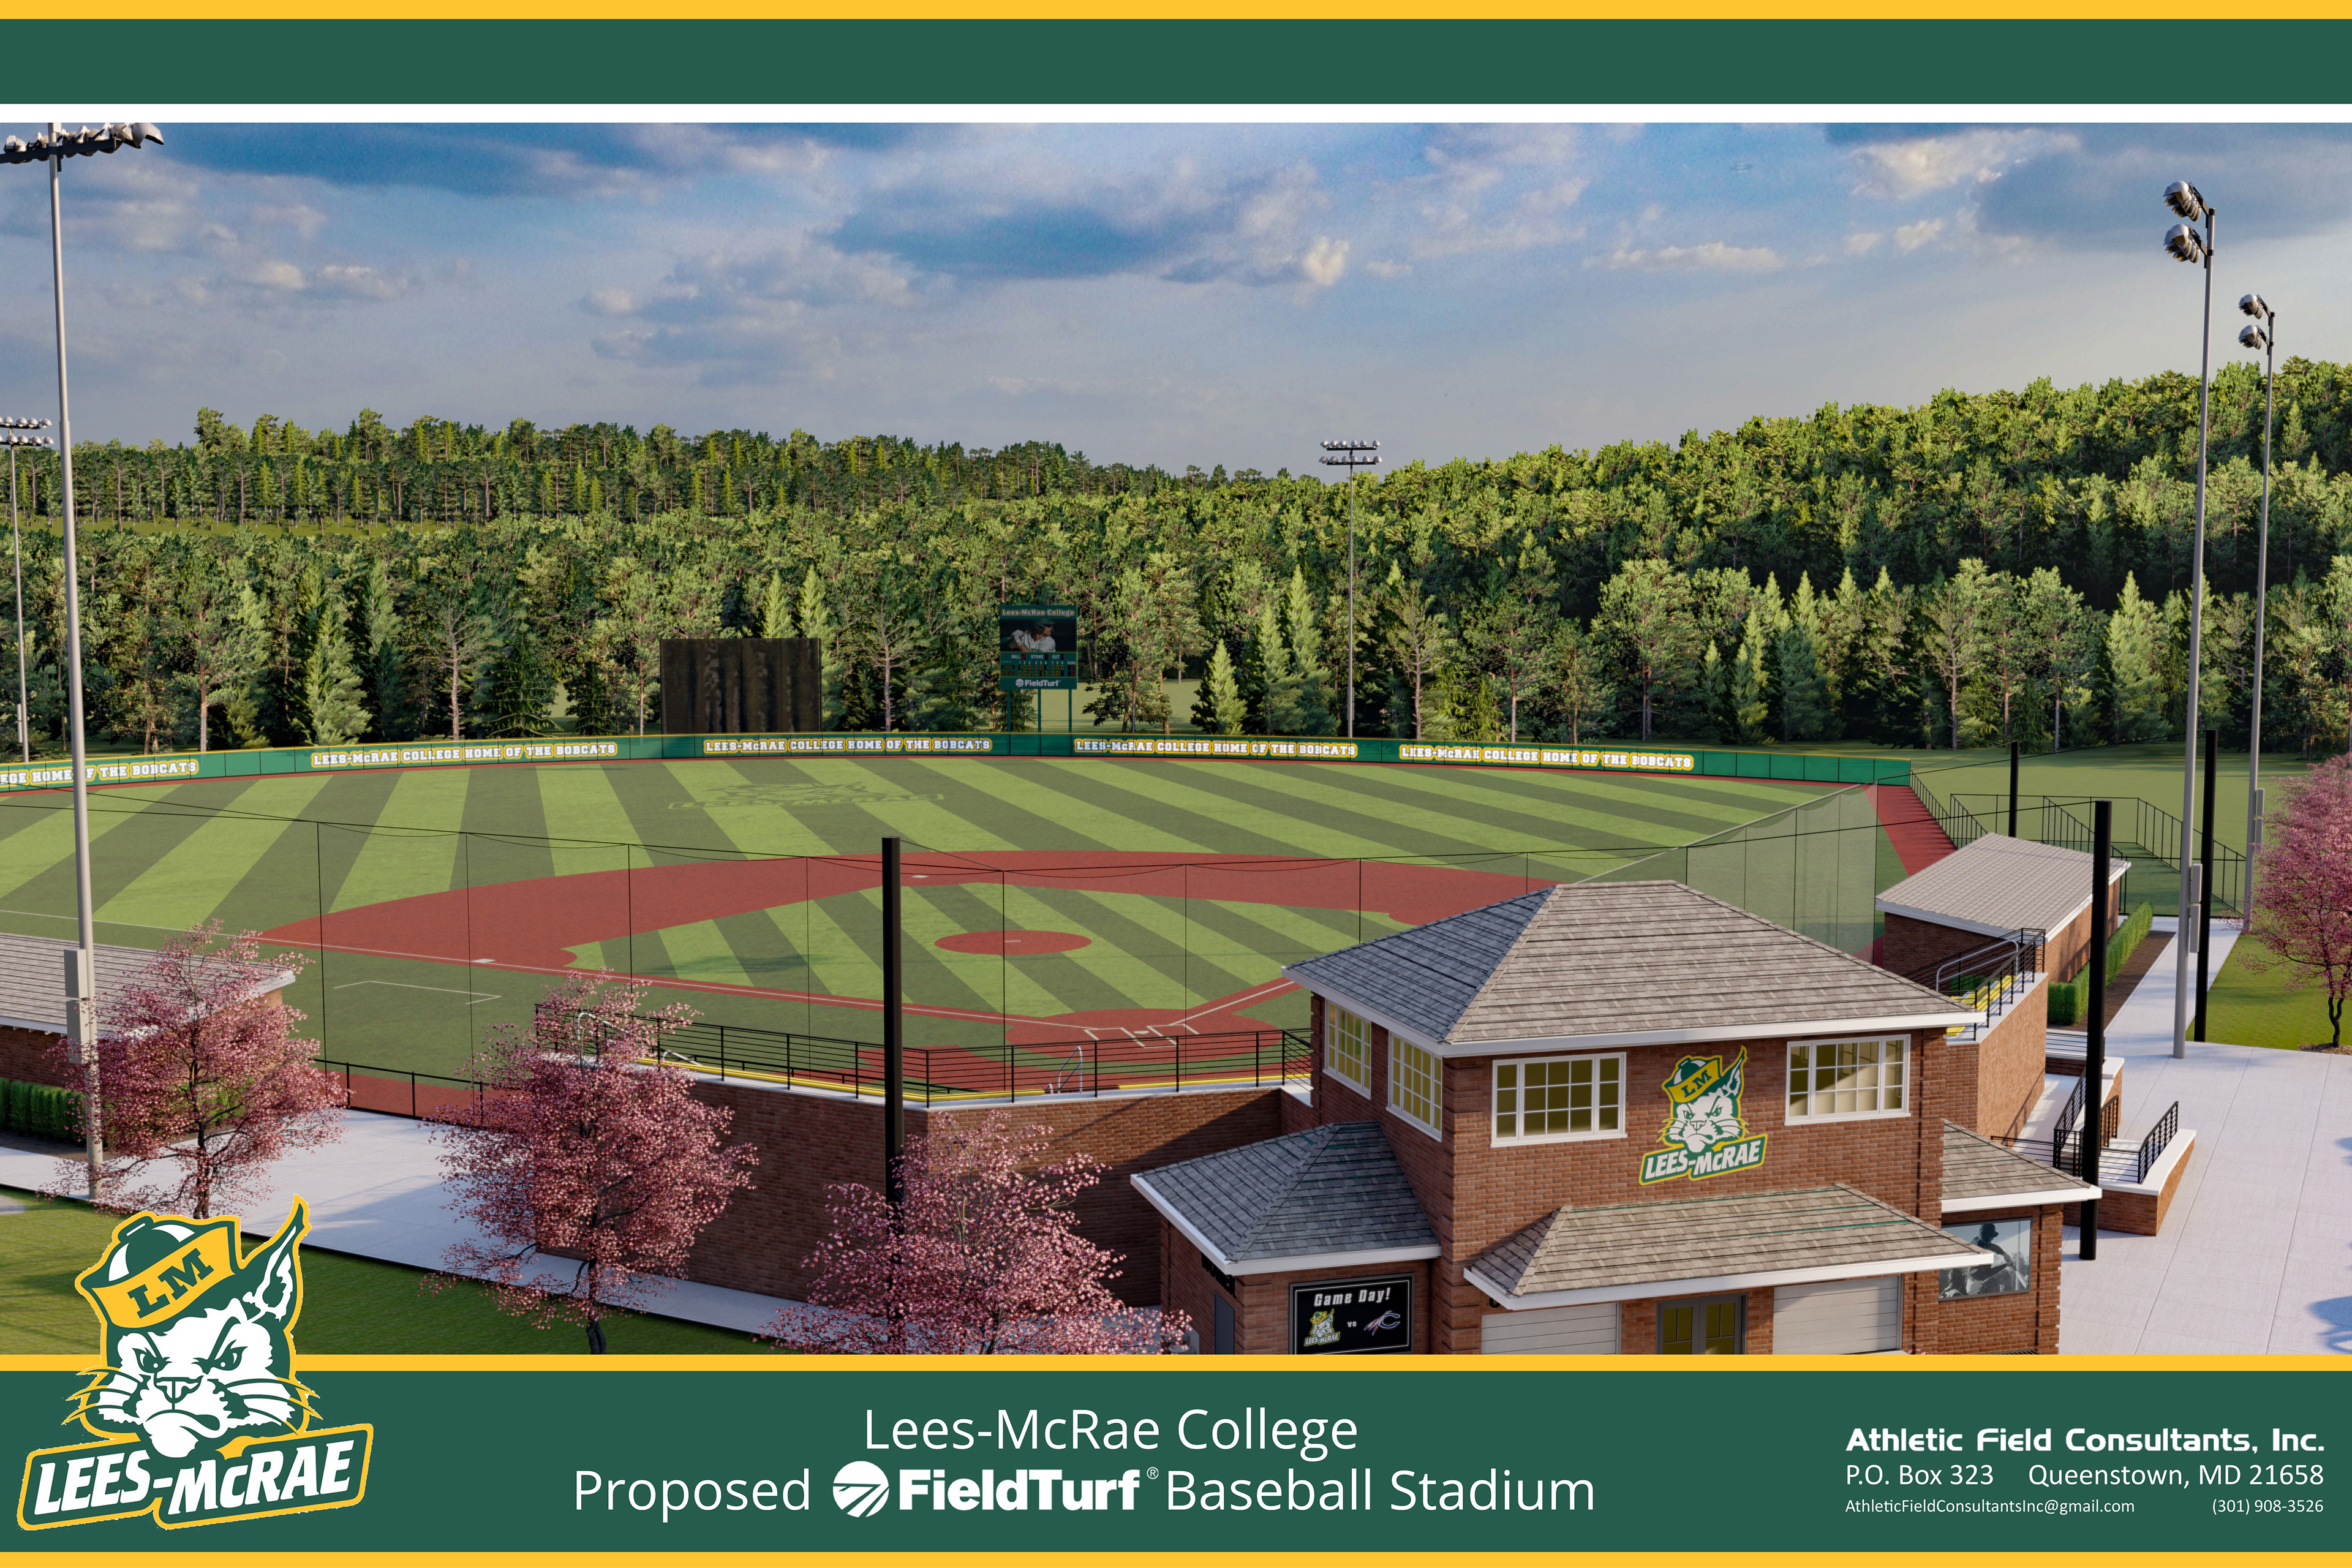 Athletic Field Consultants, Inc. - Lees-McRae College, NC - Baseball Stadium